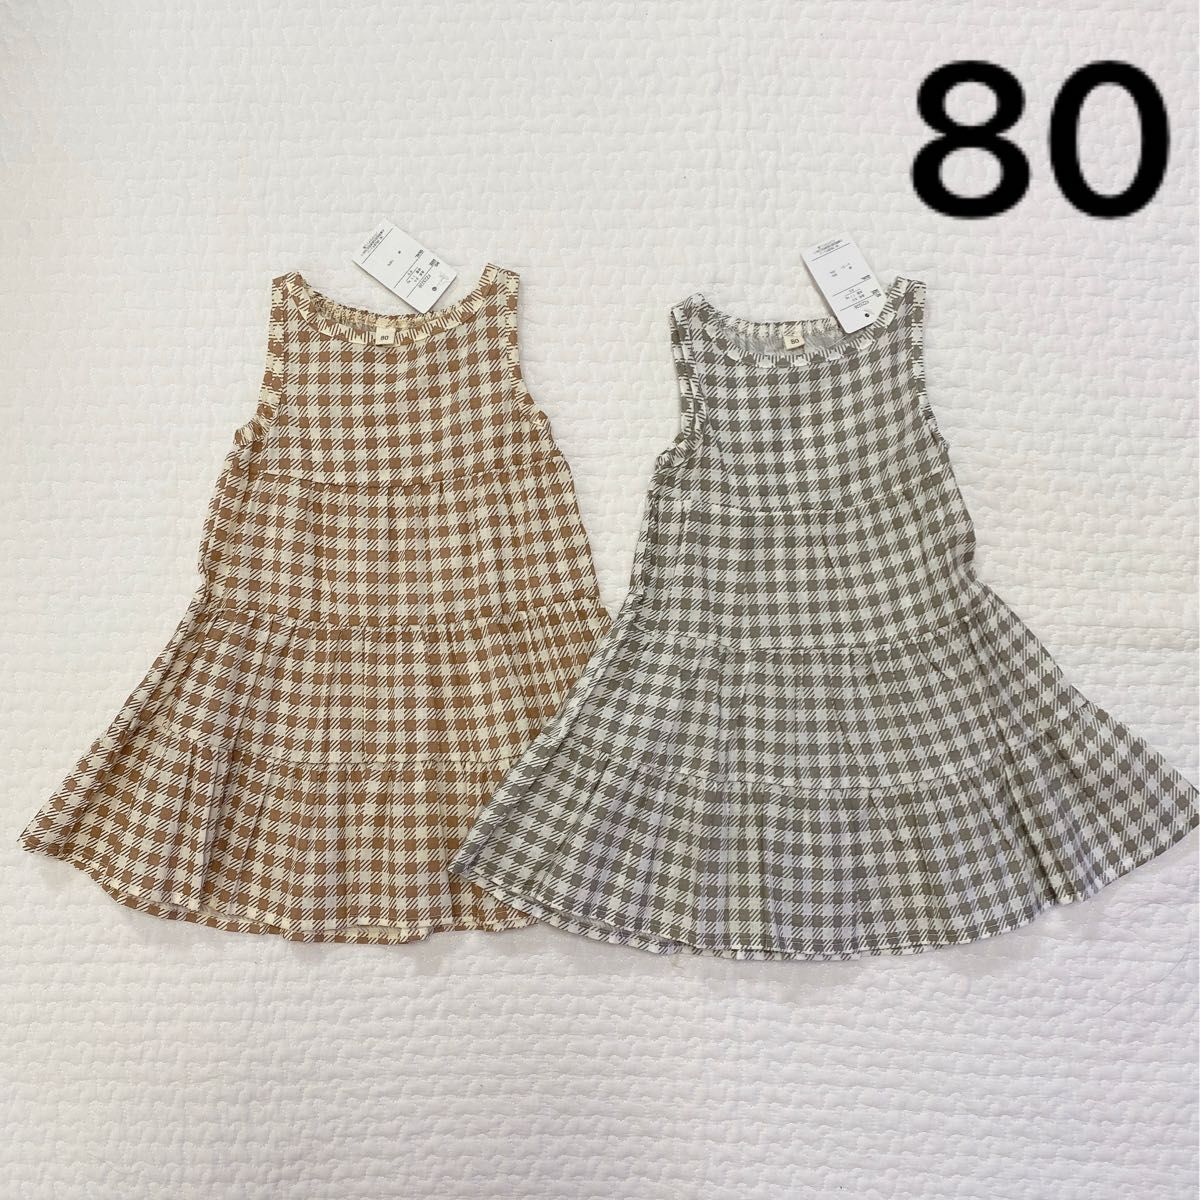 ワンピース ギンガムチェック 双子 新品 80 テータテート 韓国子供服